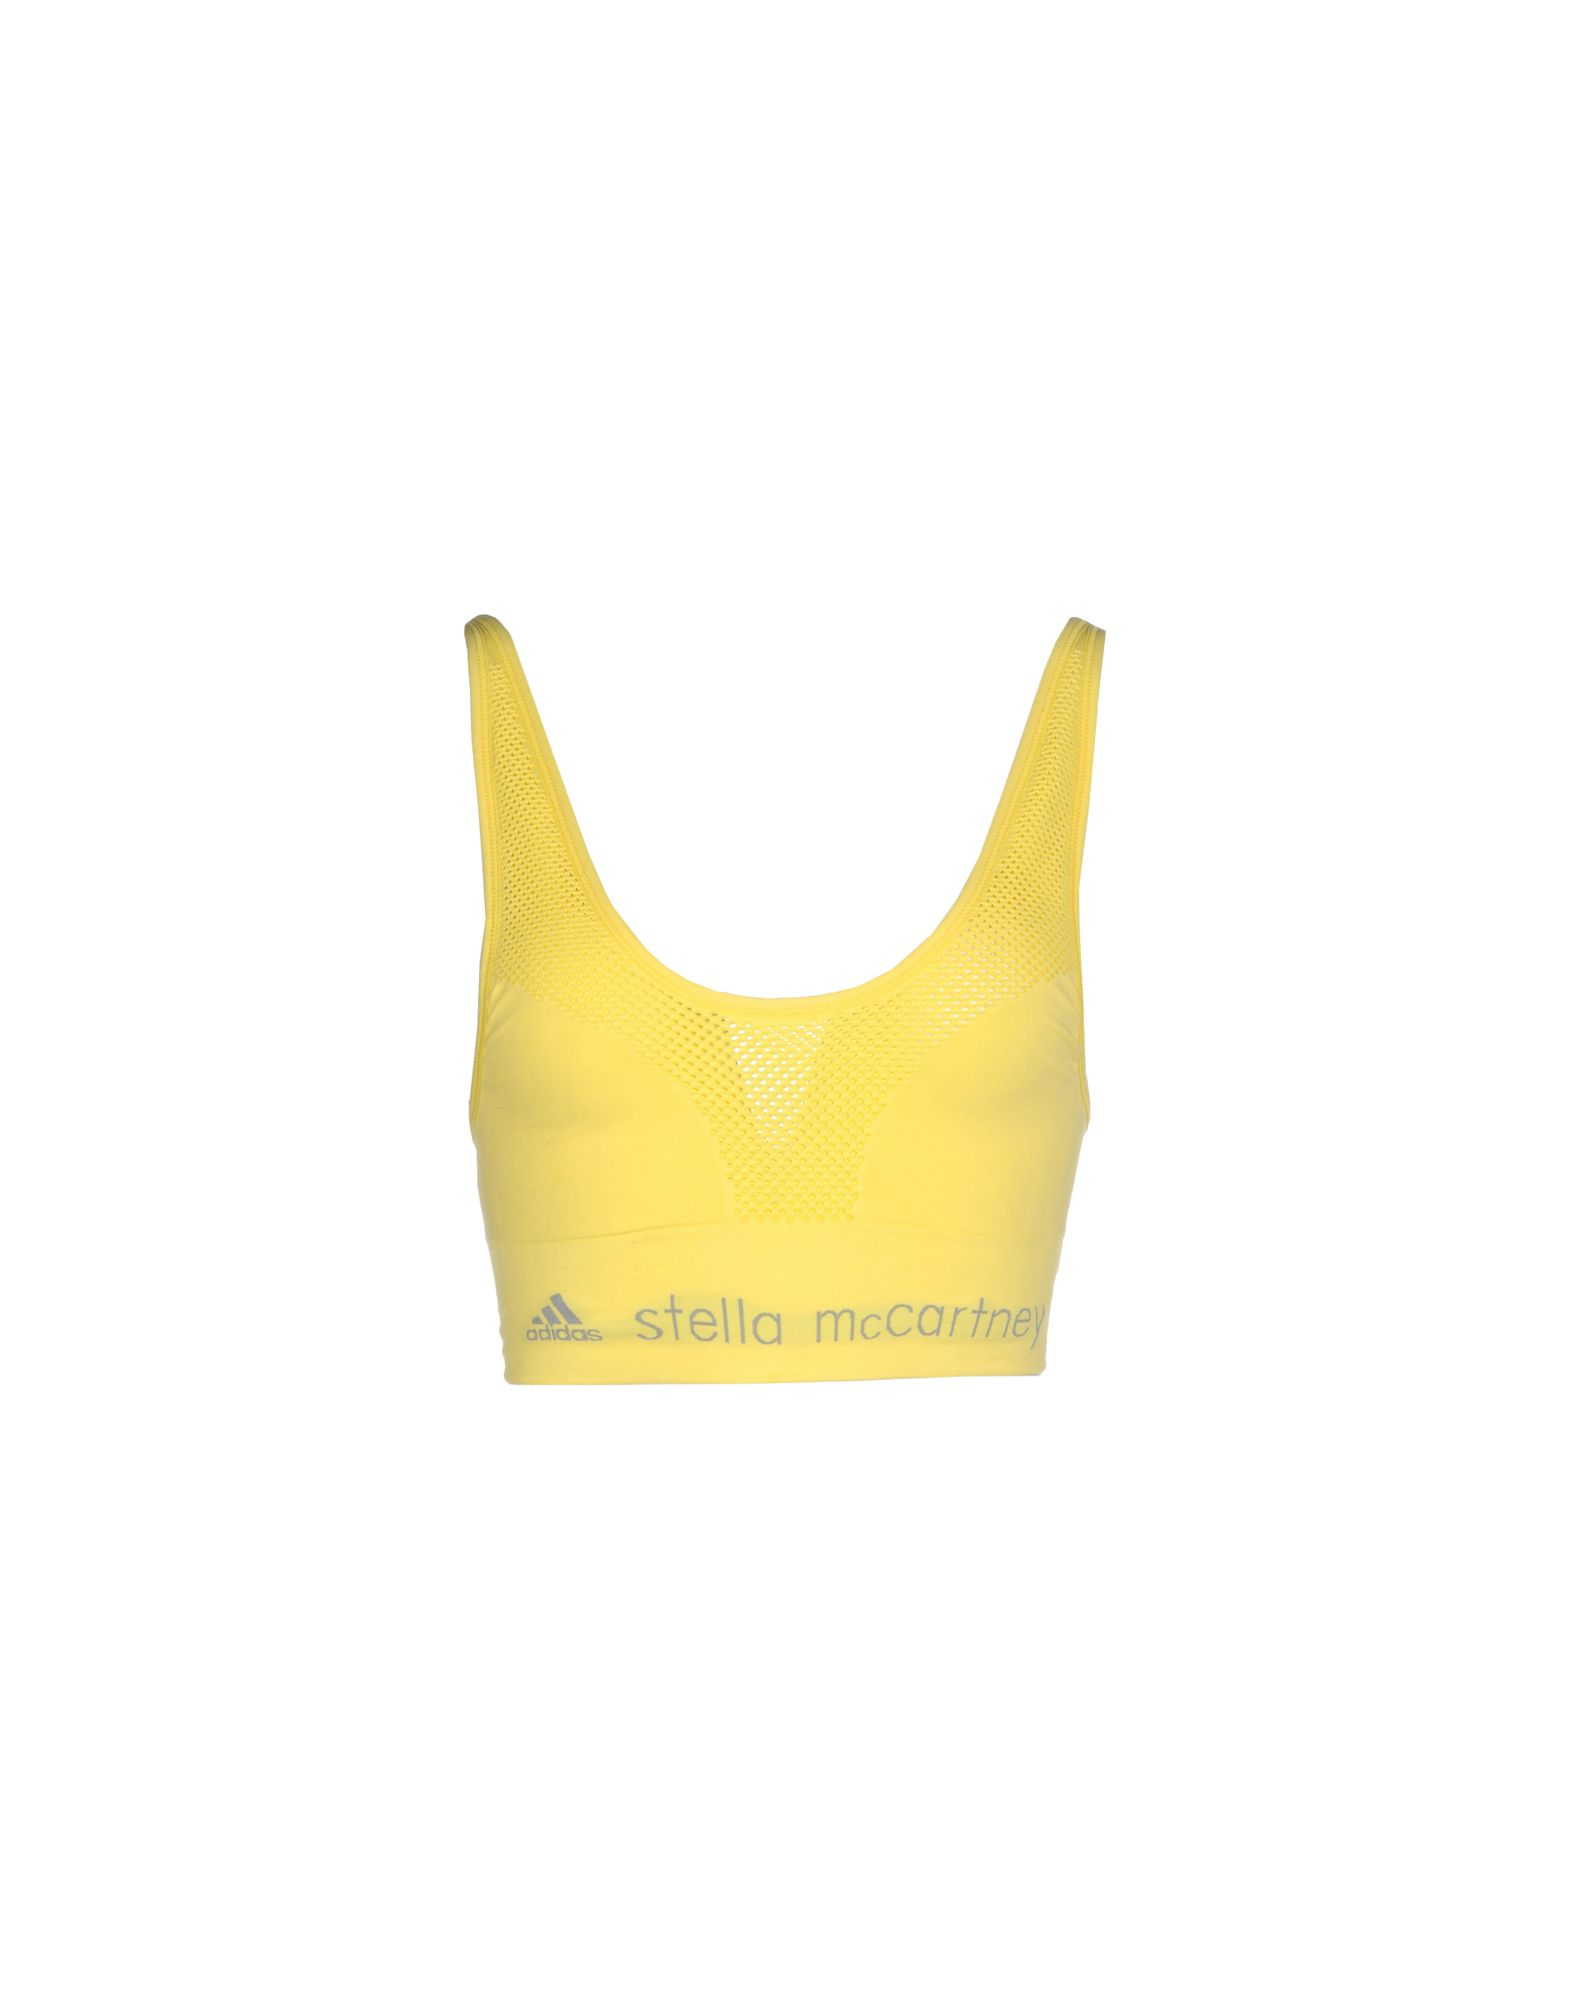 Lyst - Adidas By Stella Mccartney Bra in Yellow1571 x 2000